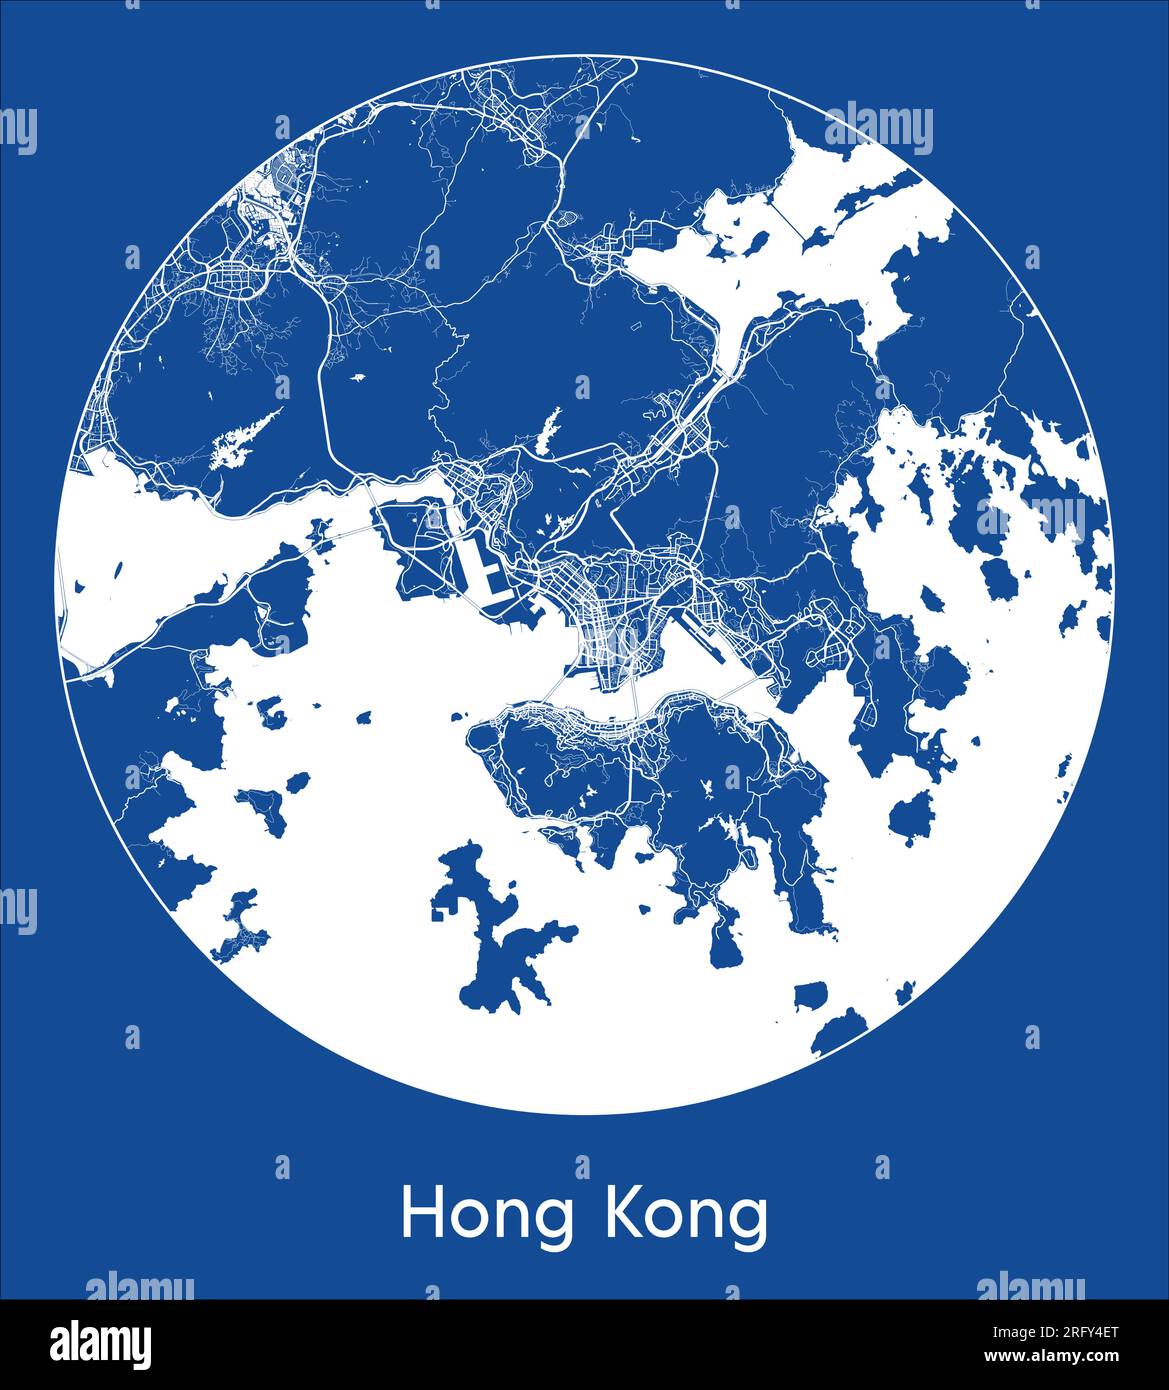 City Map Hong Kong China Asia blue print round Circle vector illustration Stock Vector